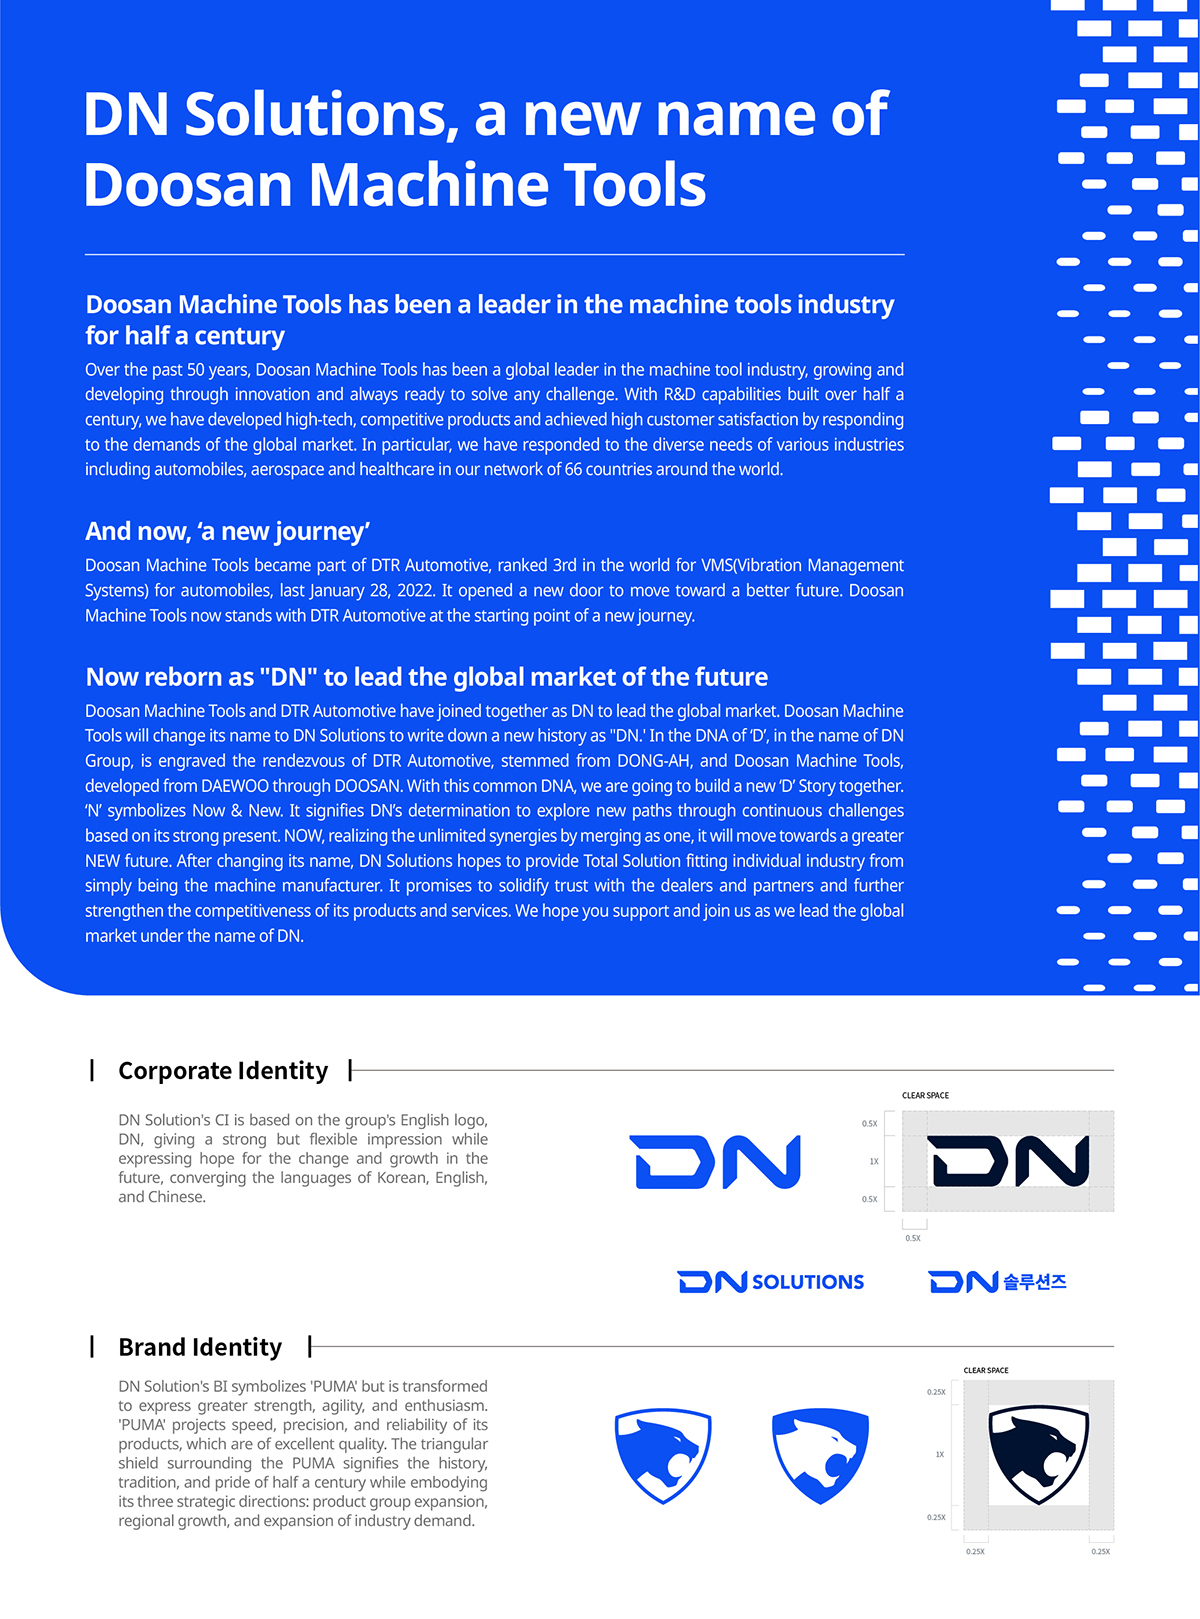 Brand DN SOLUTIONS Dormac CNC Solutions Doosan Machinetools